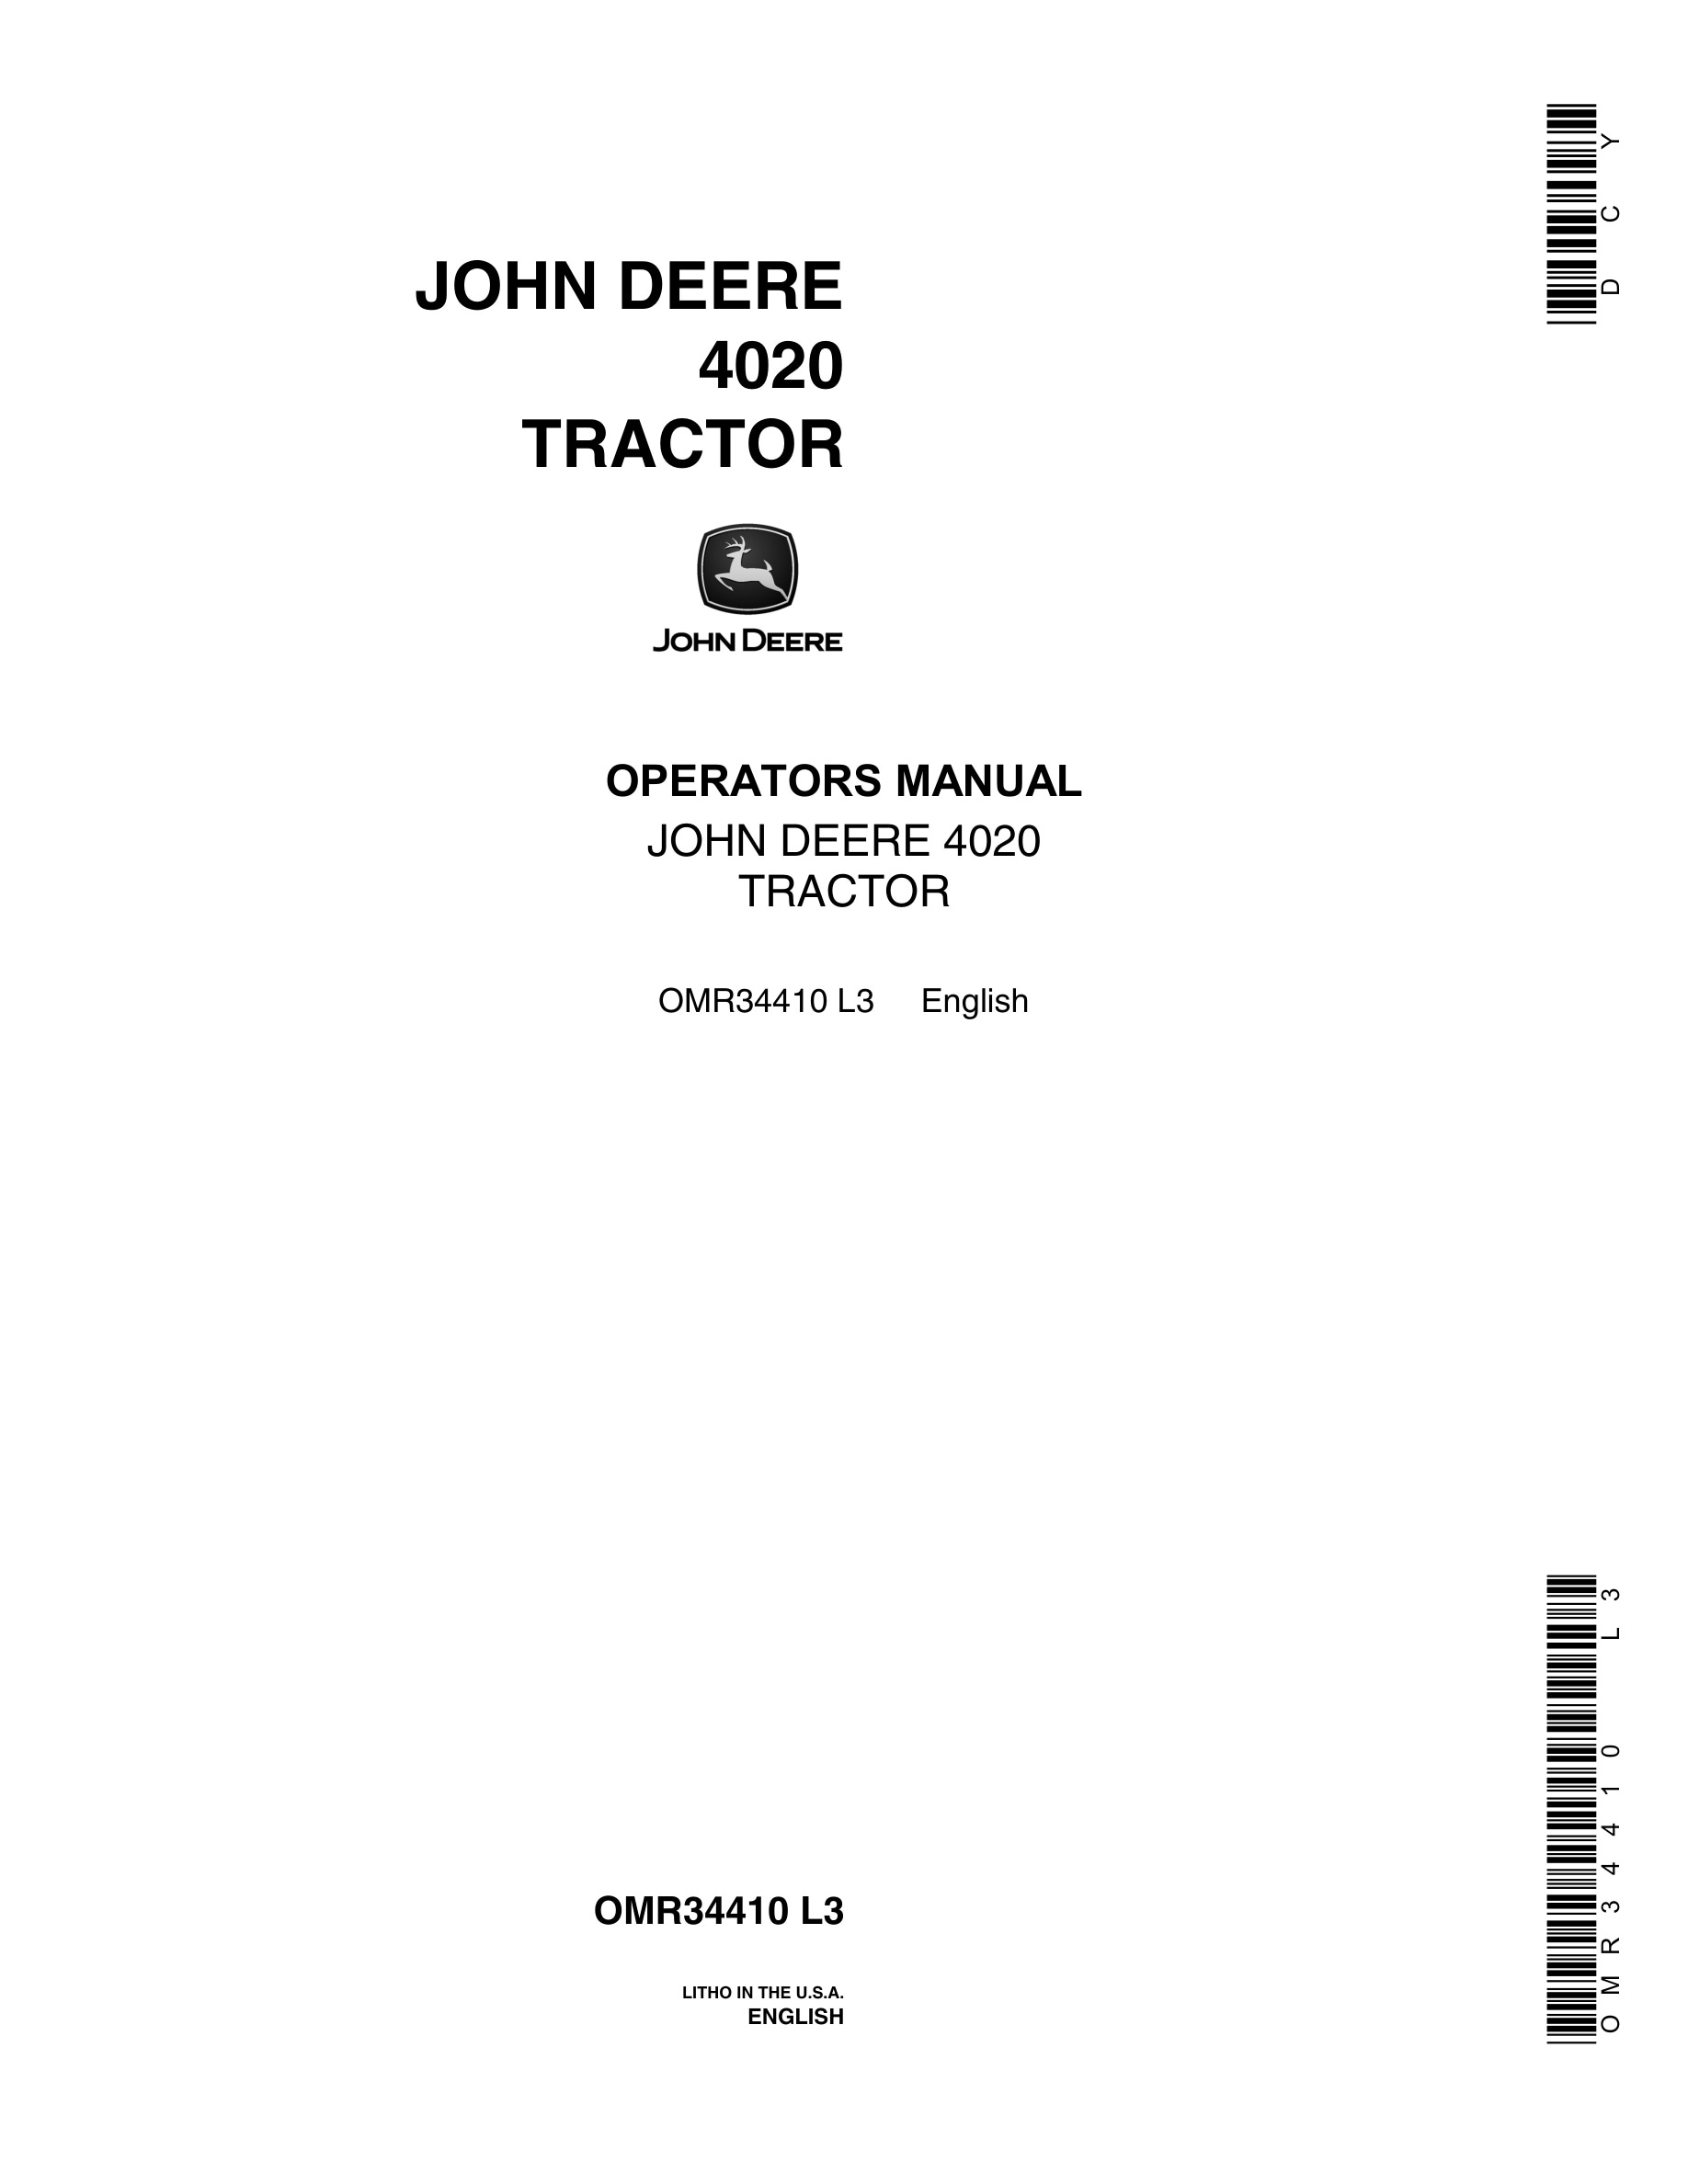 John Deere 4020 Tractor Operator Manual OMR34410-1